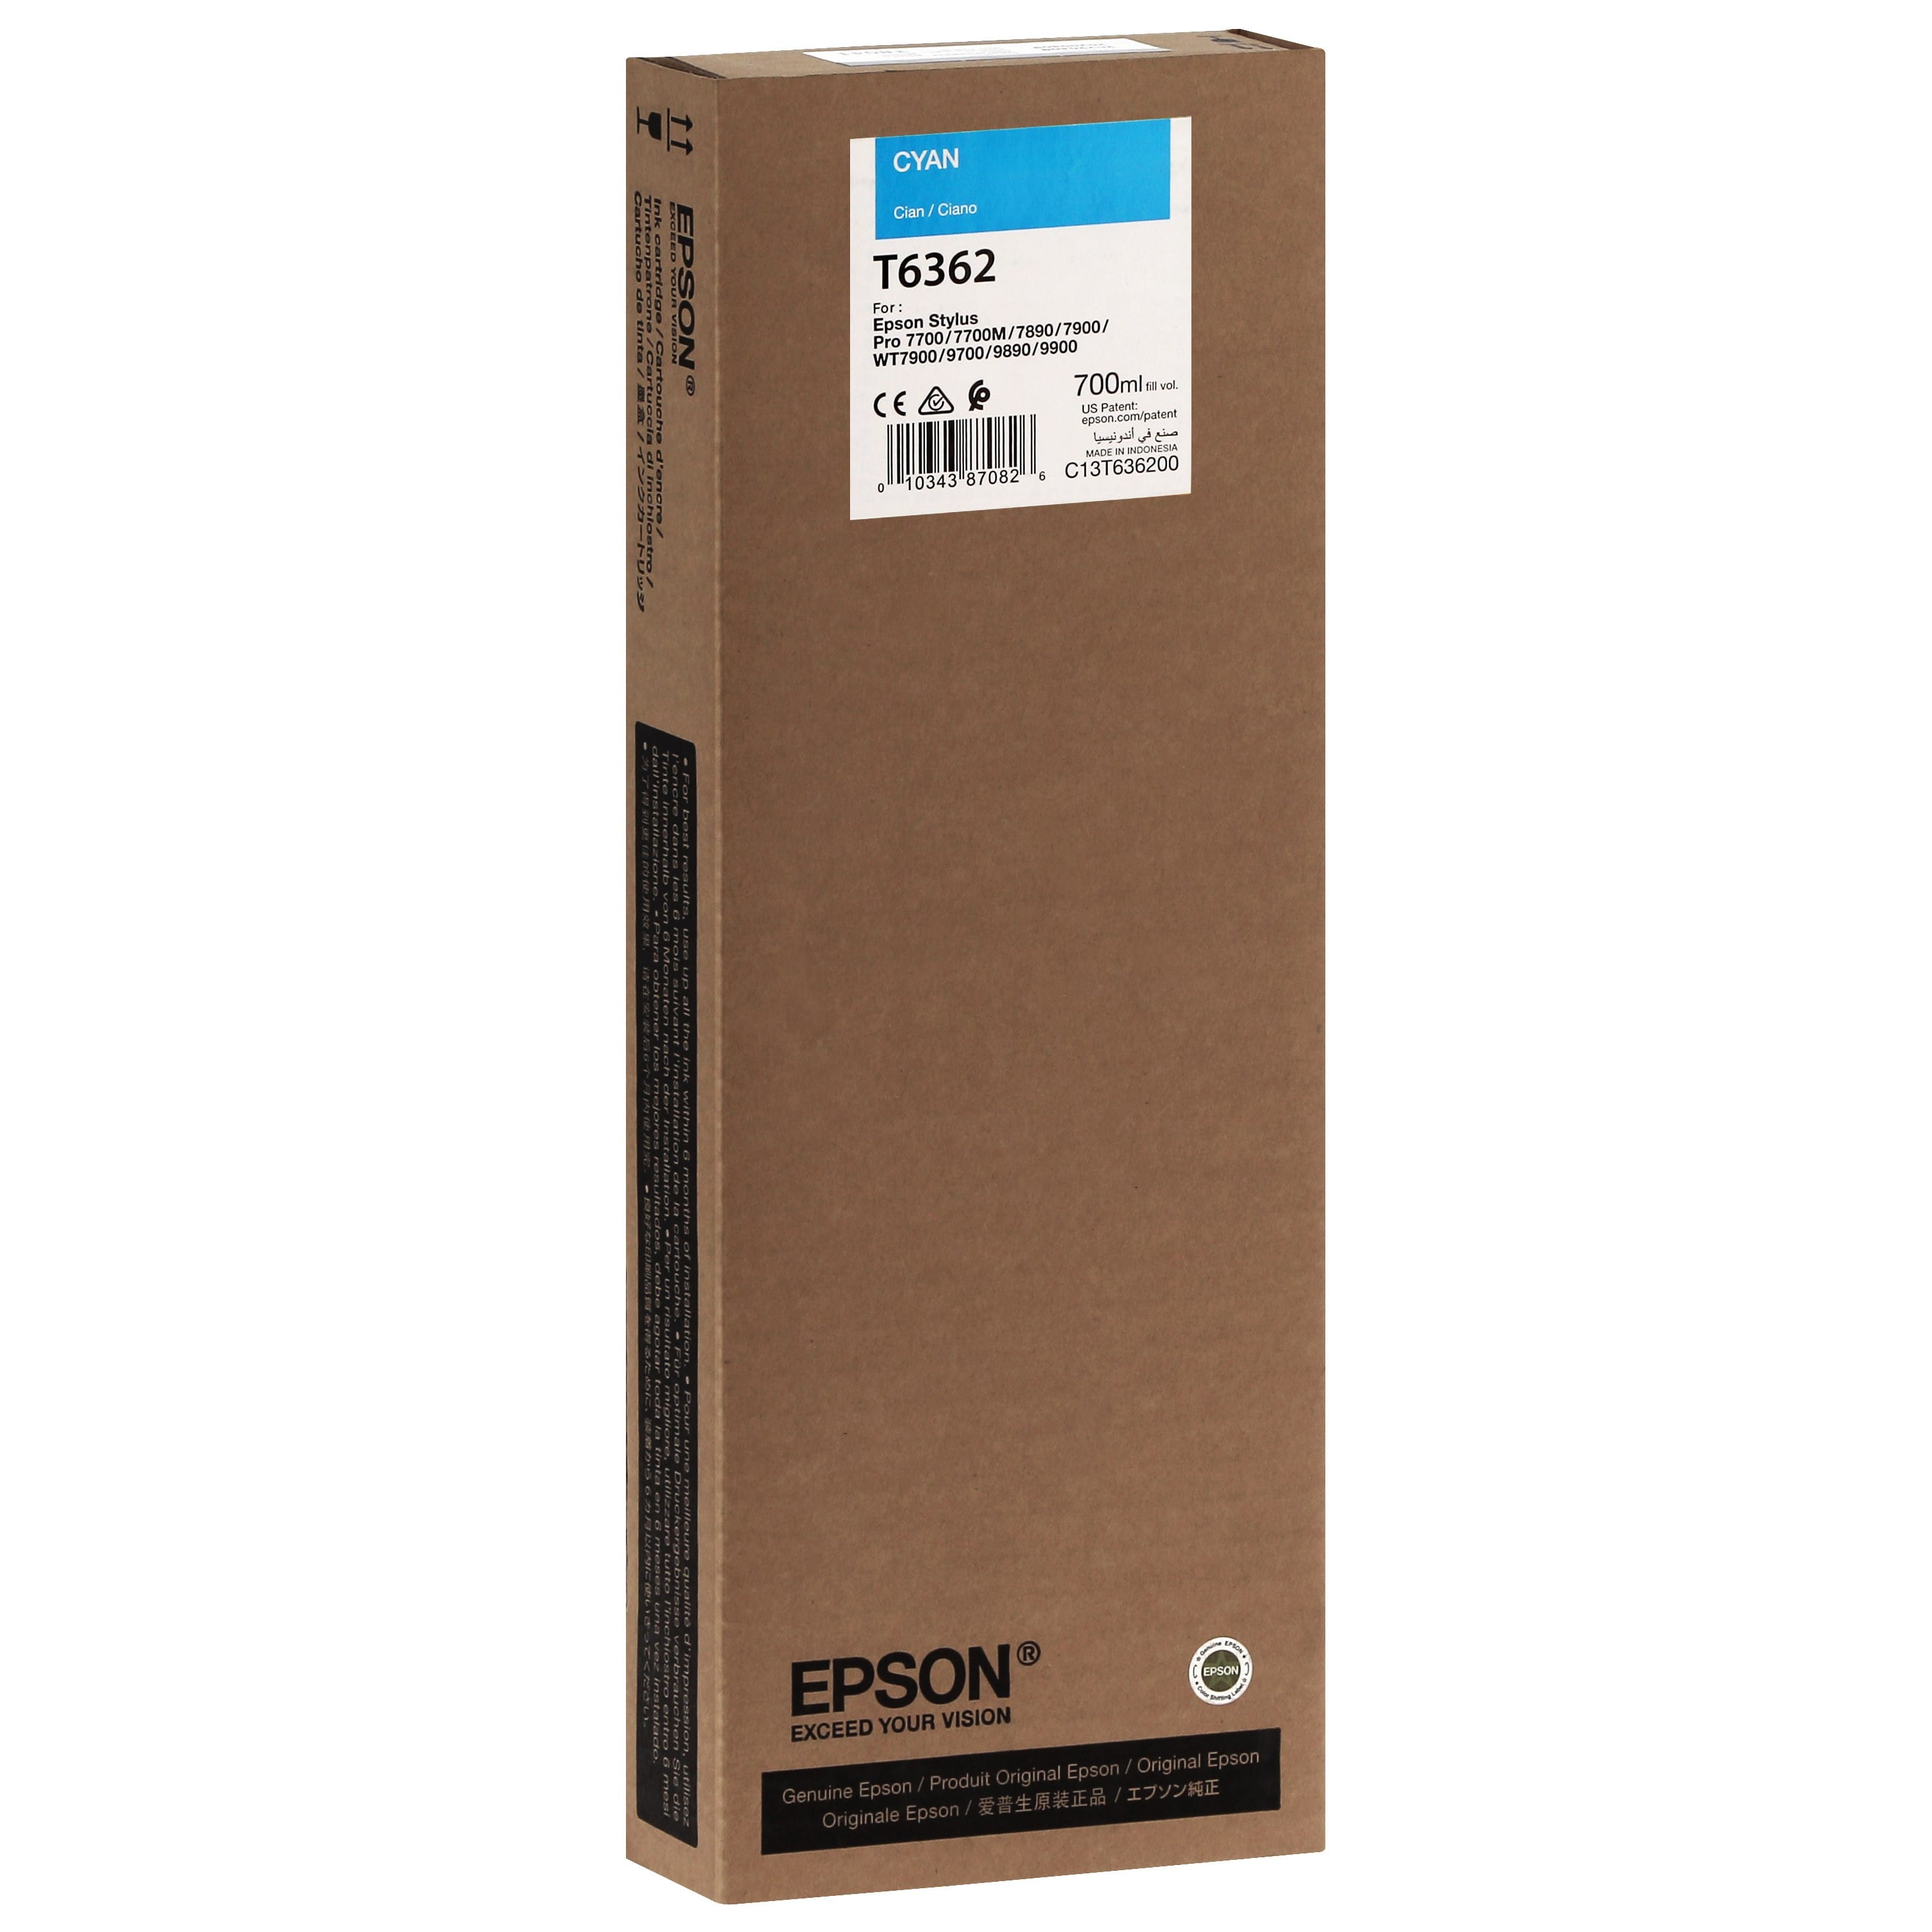 EPSON - Cartouche d'encre traceur T6362 Pour imprimante 7700/9700/7890/9890/7900/9900 Cyan - 700ml